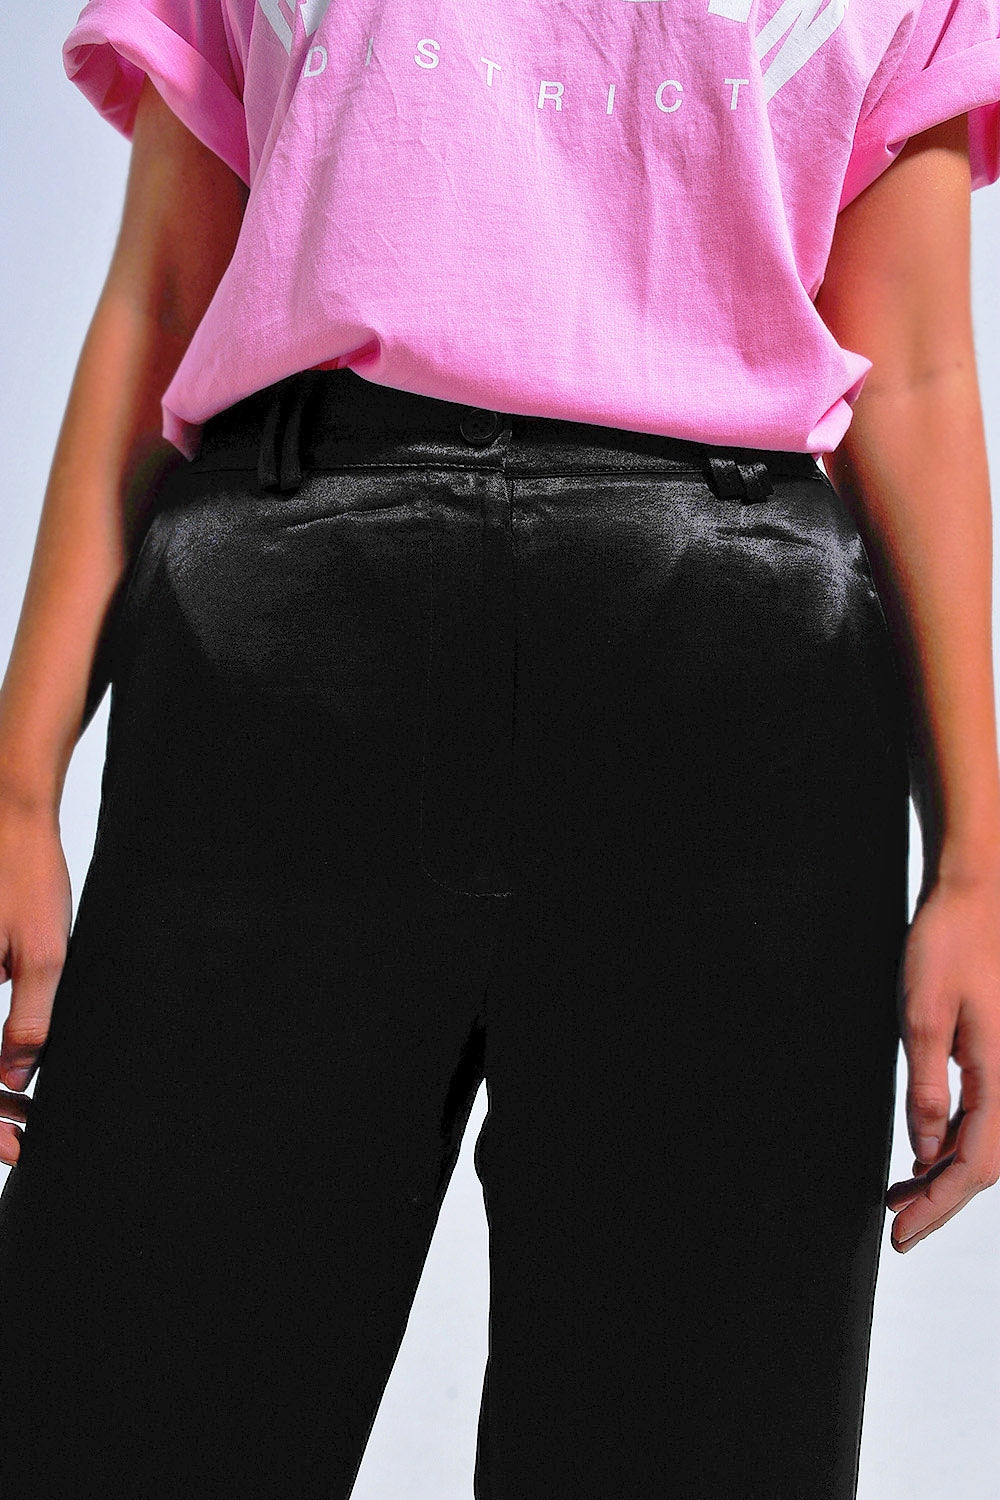 Pantaloni con fondo ampio in raso colore nero